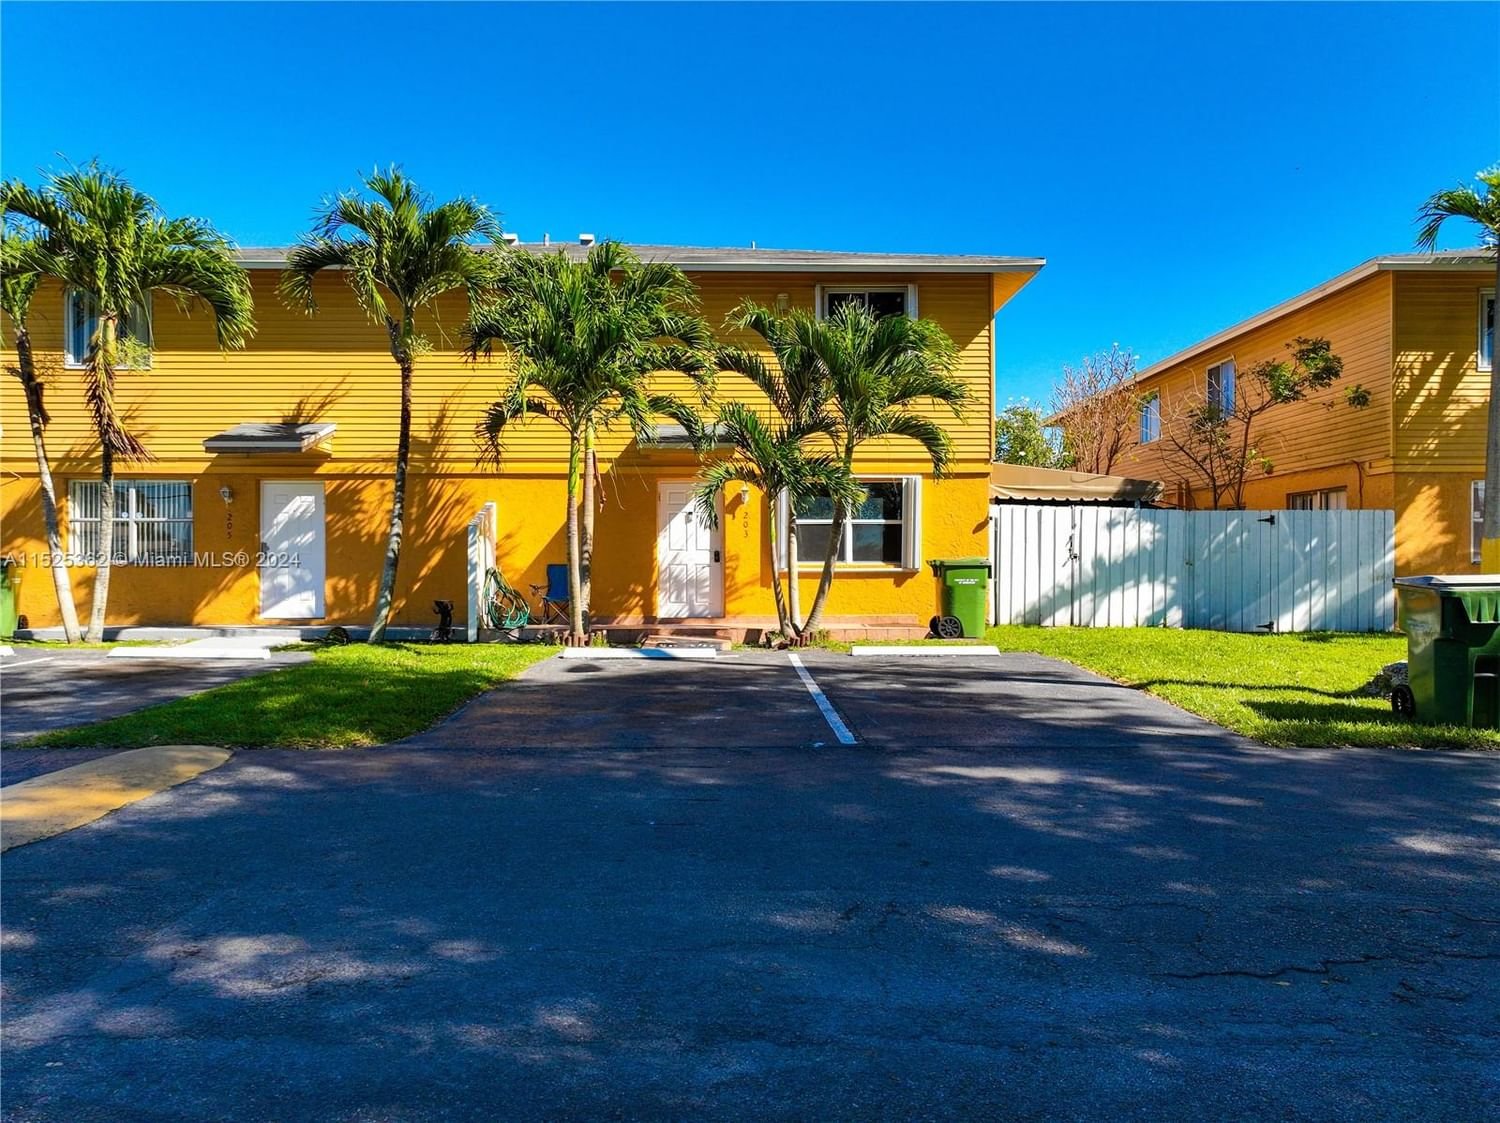 Real estate property located at 203 12th Ave, Miami-Dade County, SEAGRAPE VILLAGE CONDO, Homestead, FL